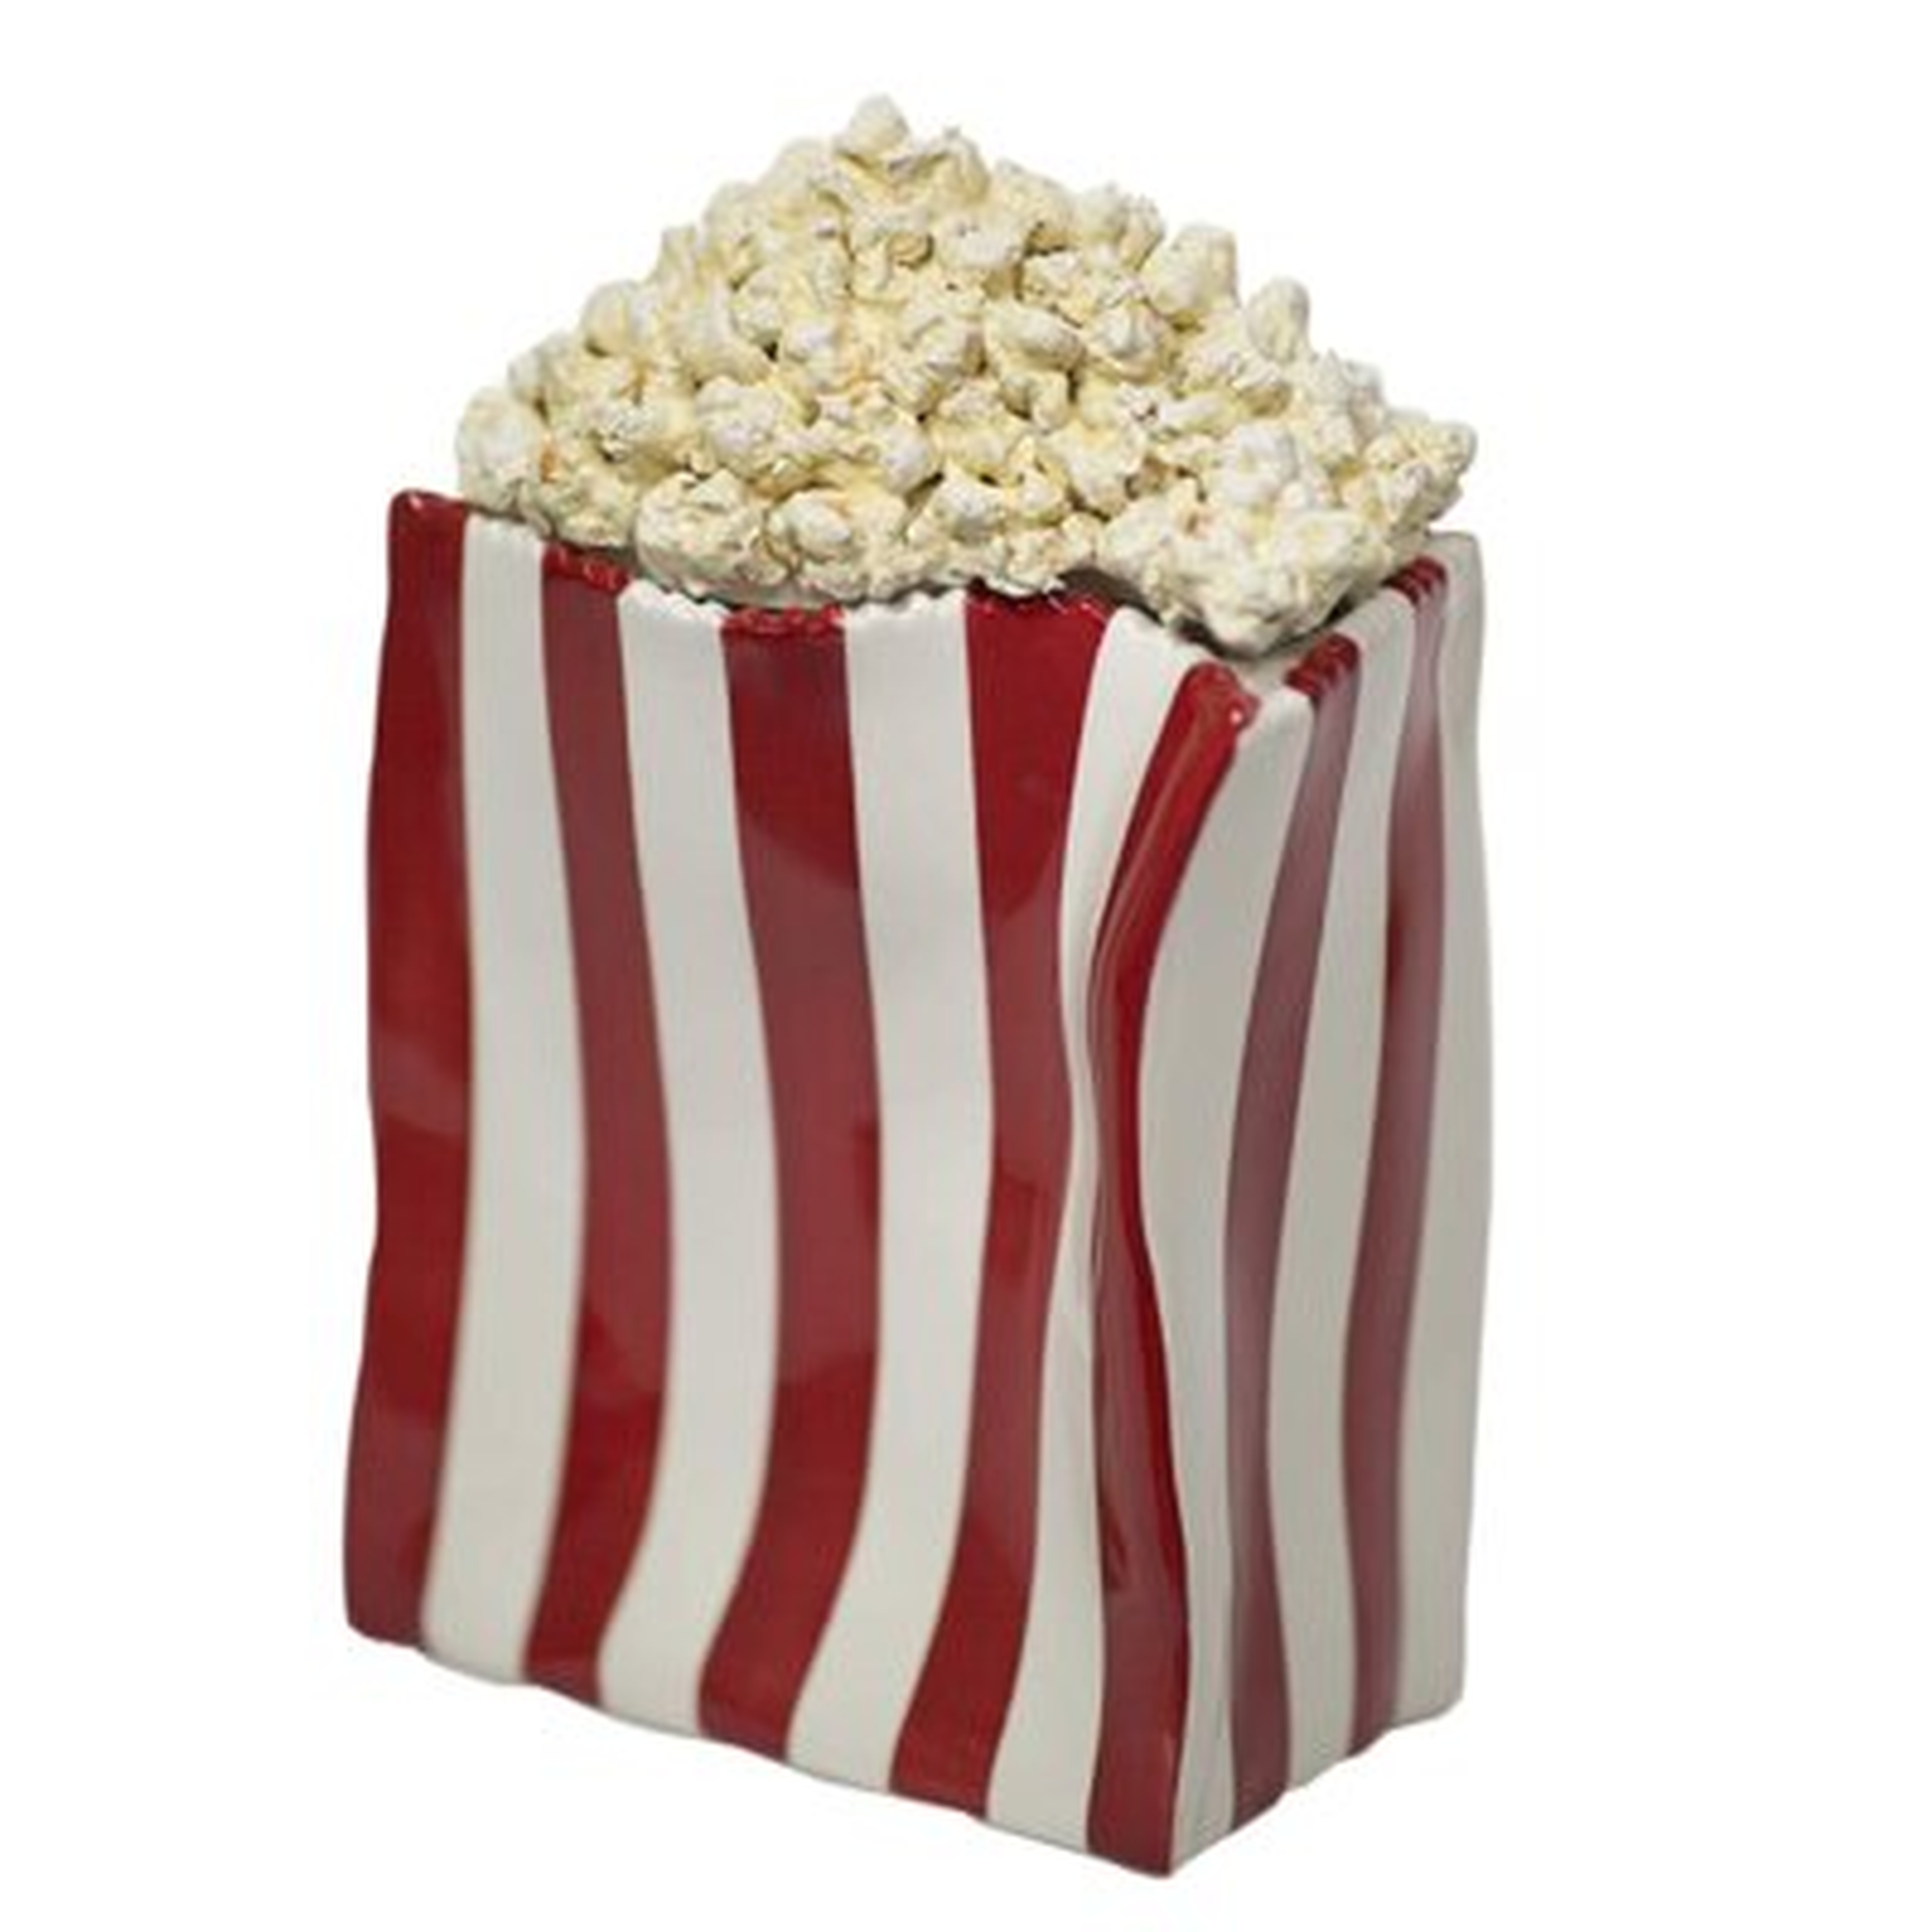 Ceramic Popcorn Lid & Container - Wayfair